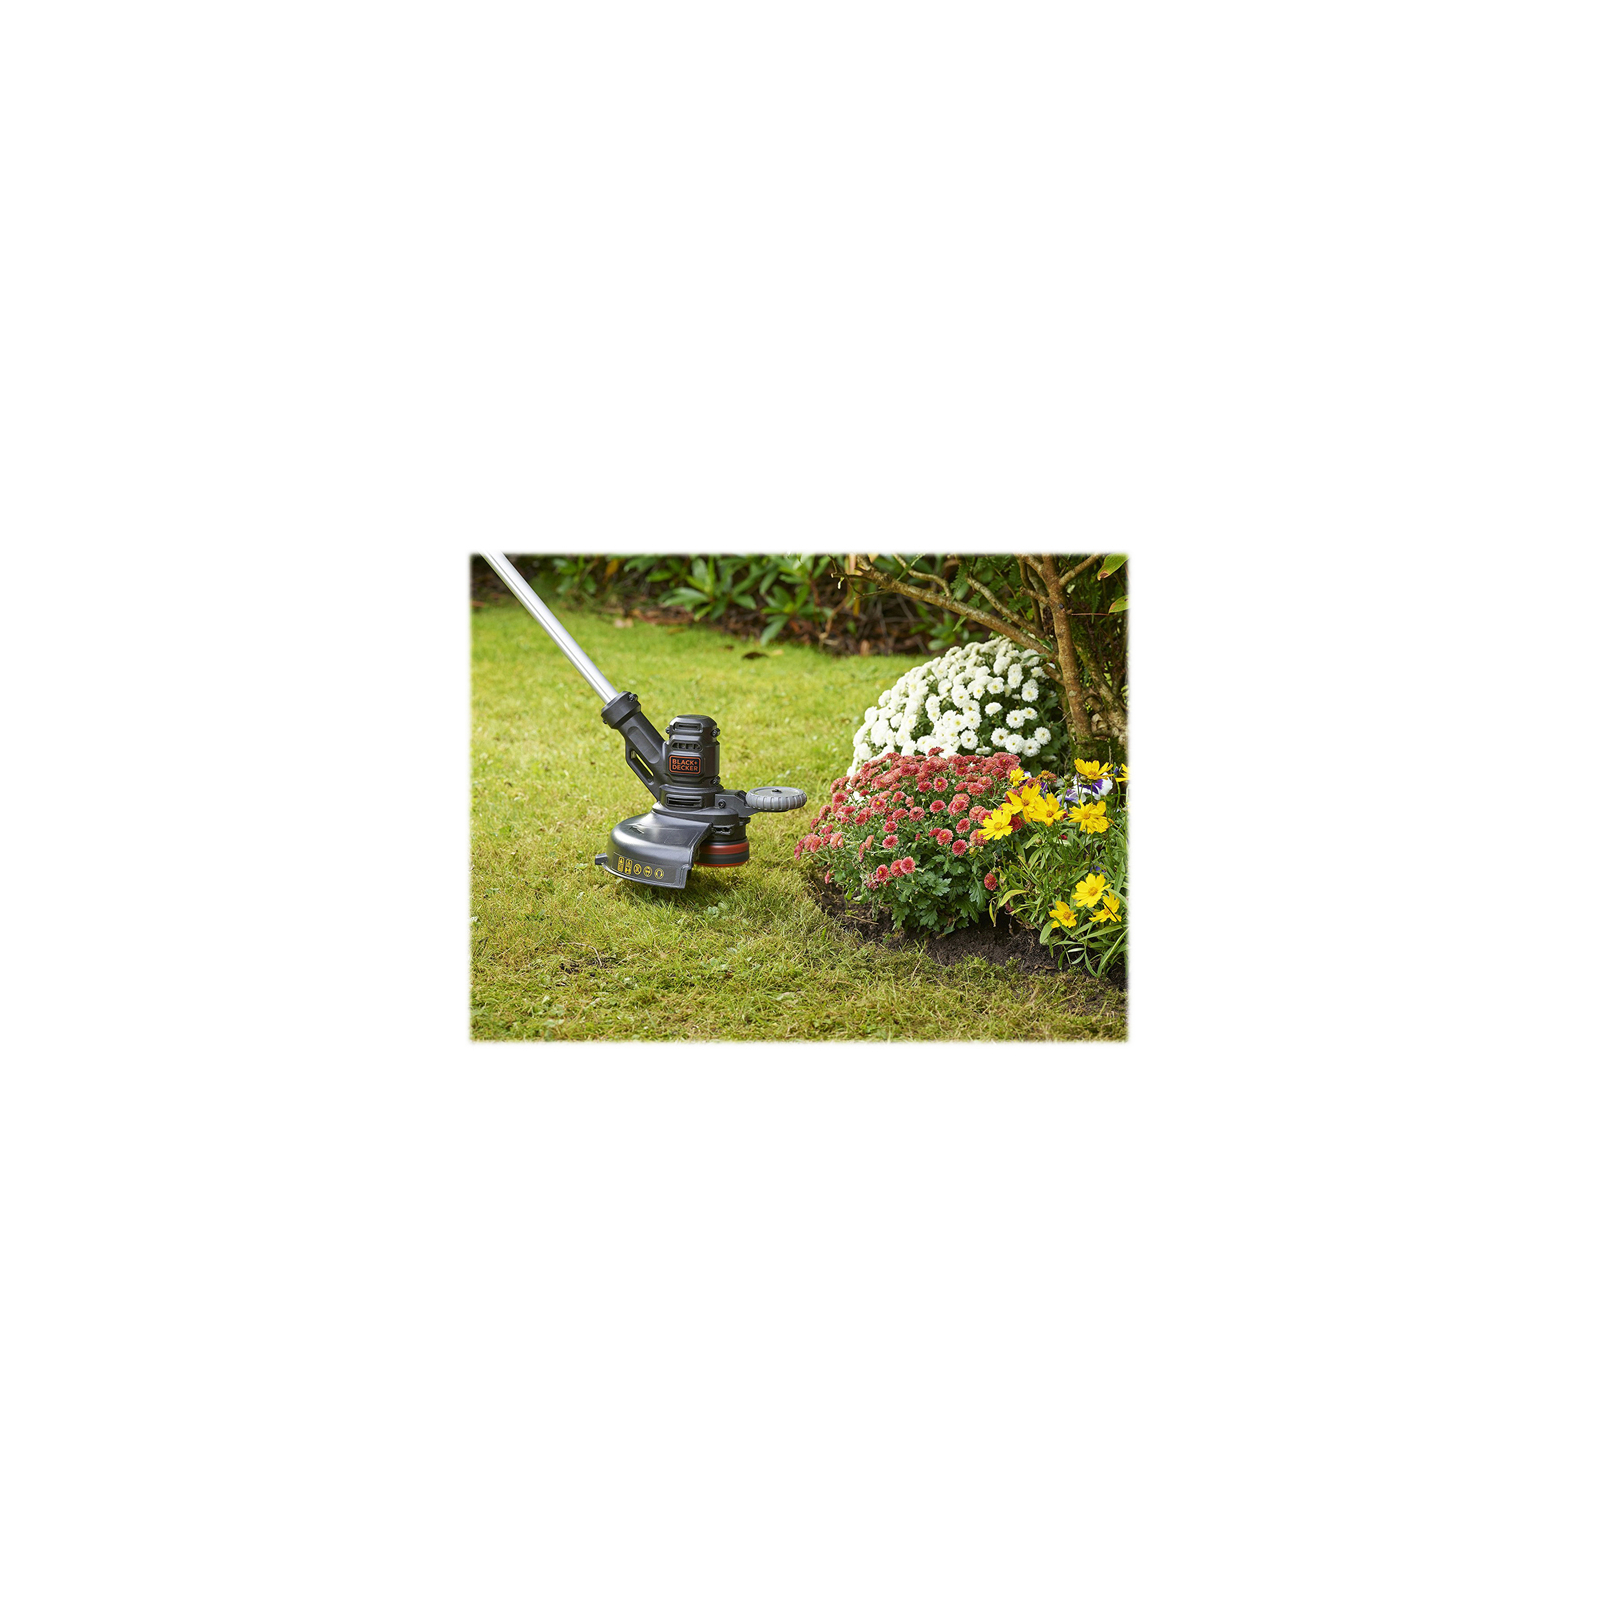 Триммер садовый Black&Decker 0.55 кВт, ширина кошения 30 см, 7500 об/мин, вес 2.6 кг (BESTE630) изображение 2